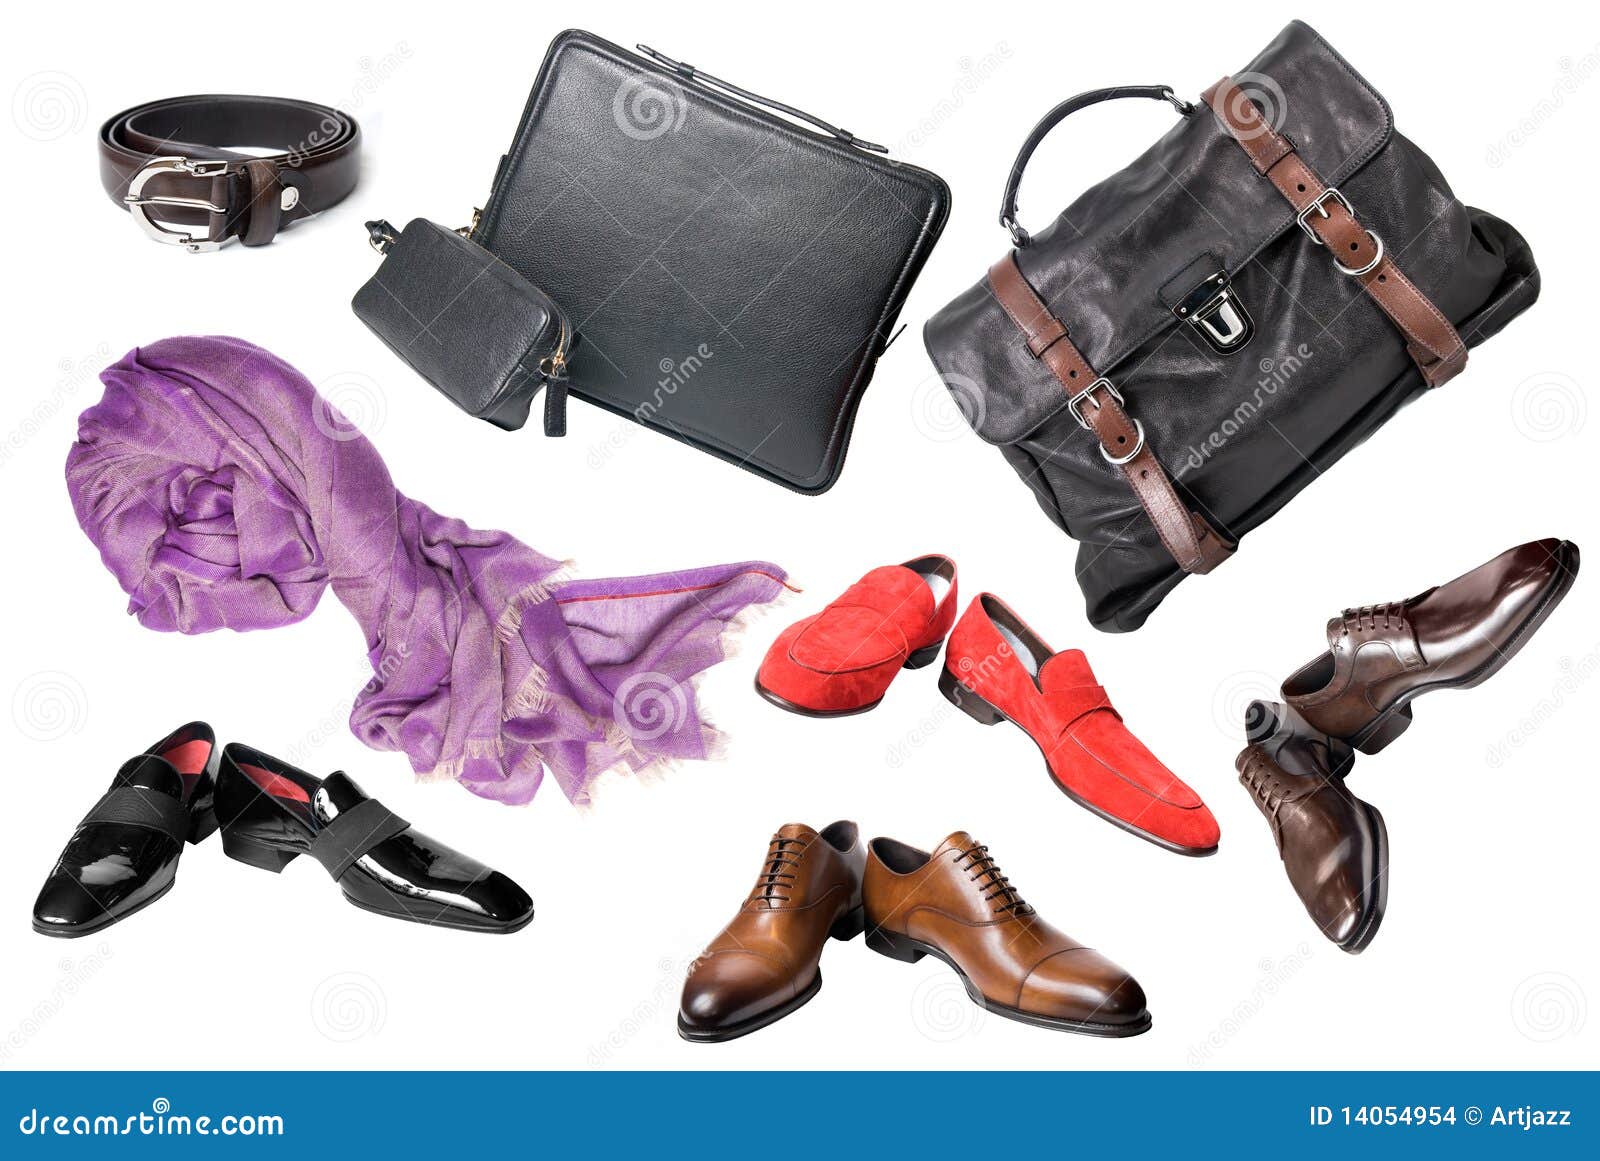 Bags - Shoes + Accessories - MEN